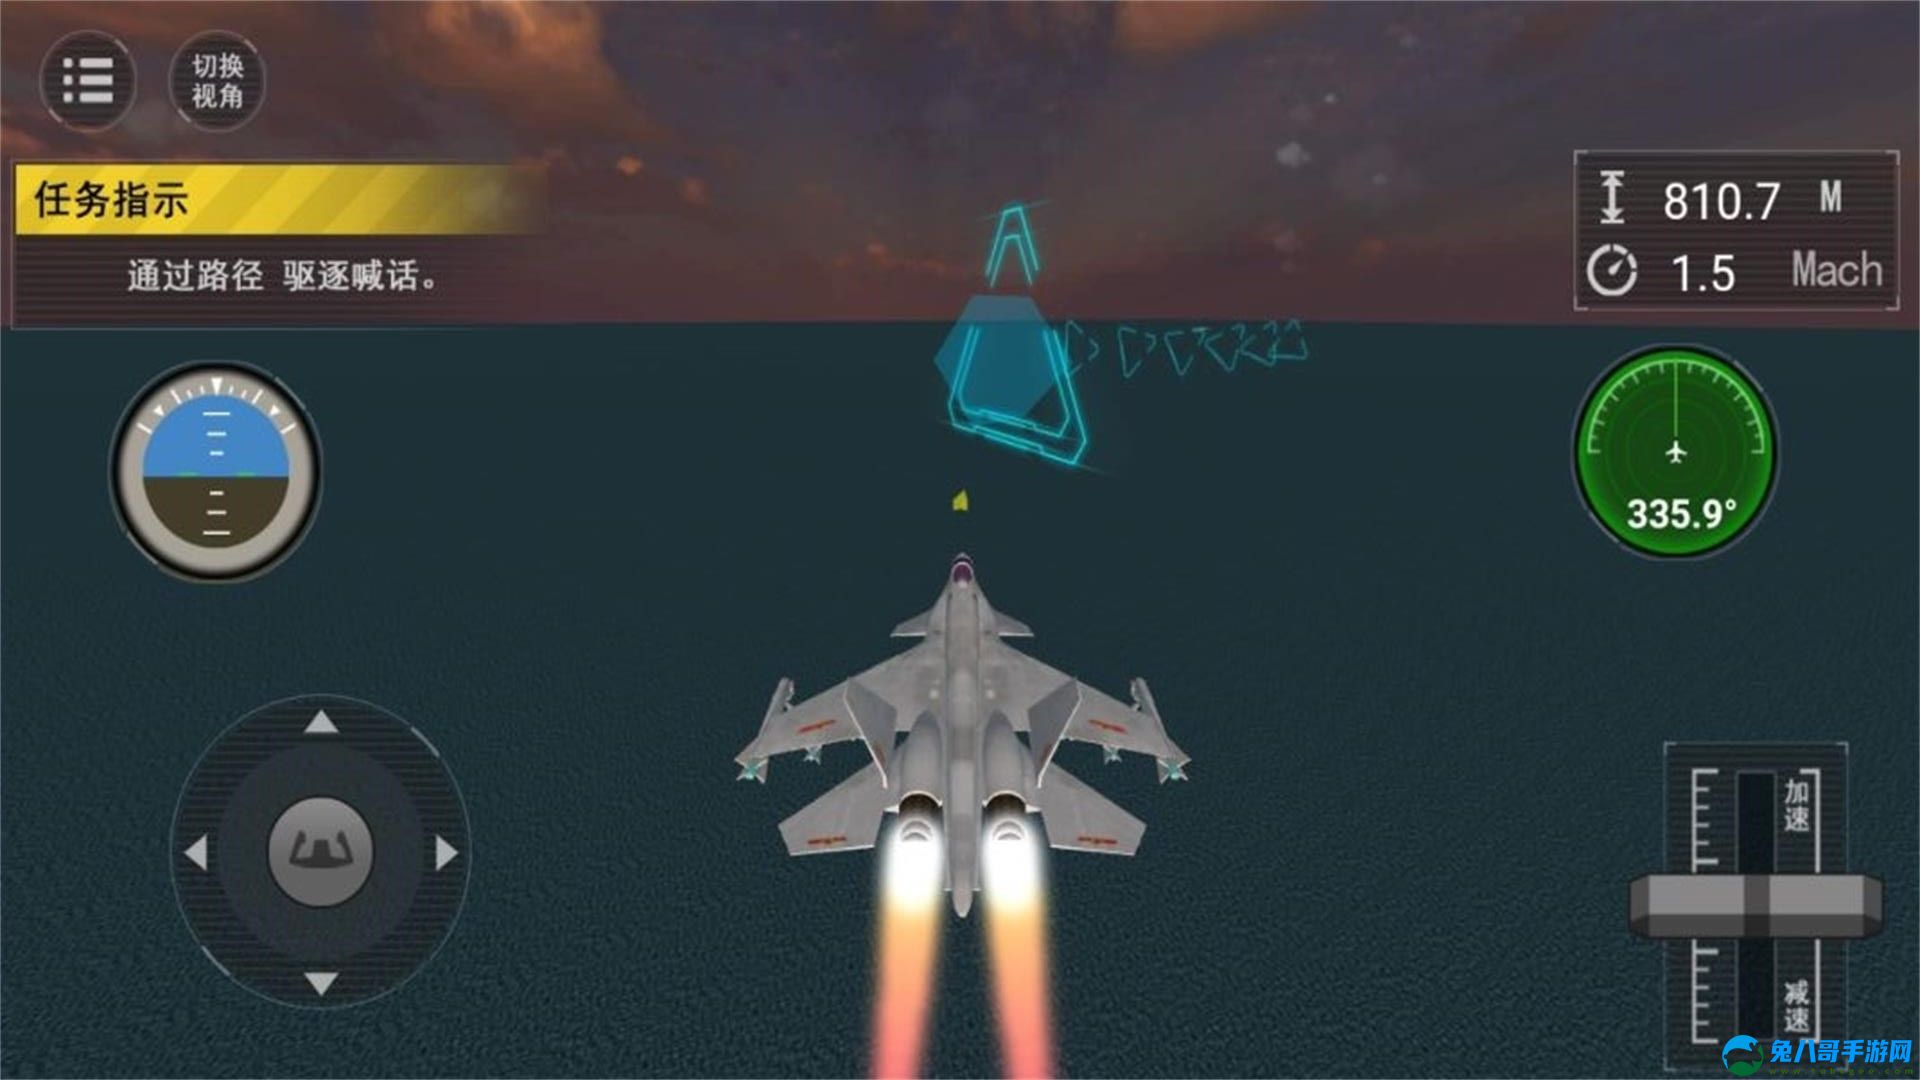 飞机航母起降模拟游戏手机版 v1.0.1